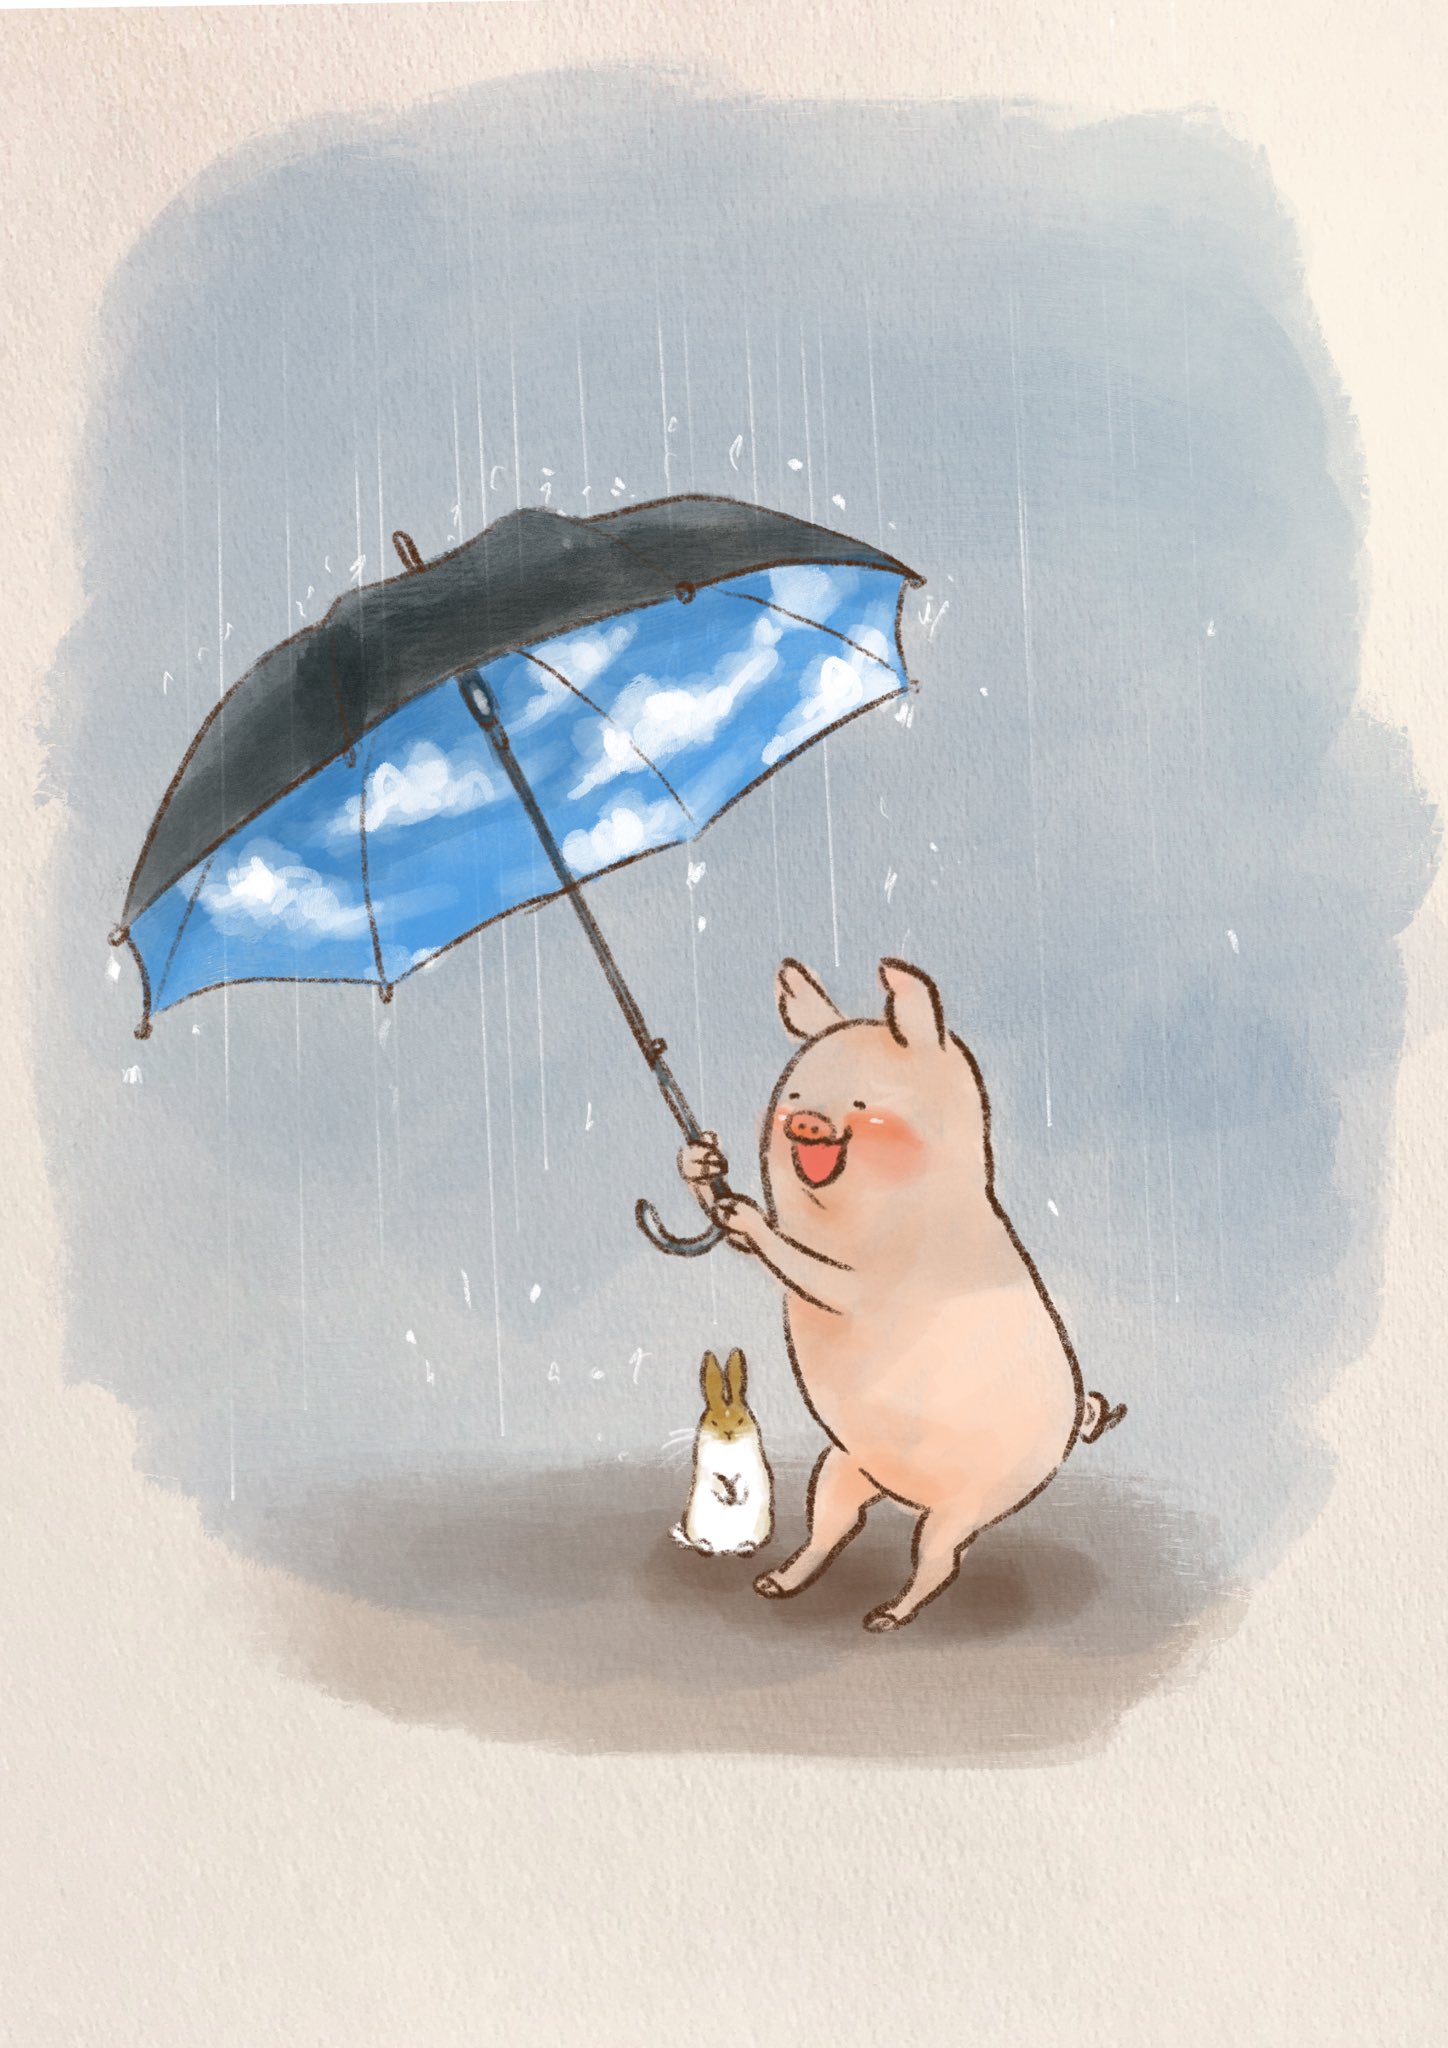 𝓐𝓻𝓽𝓻𝓲𝓮𝓵アトリエル Rie Nakatani 最近ウサギ飼いはじめました A Twitter ぬれちゃうよ もうすこしこっち 何年か前にこの傘欲しかったこと思い出した ほんとは 雨の日に外歩くのは大嫌いなので こんな傘さしてれば 少しは楽しいかなぁって 梅雨 傘の日